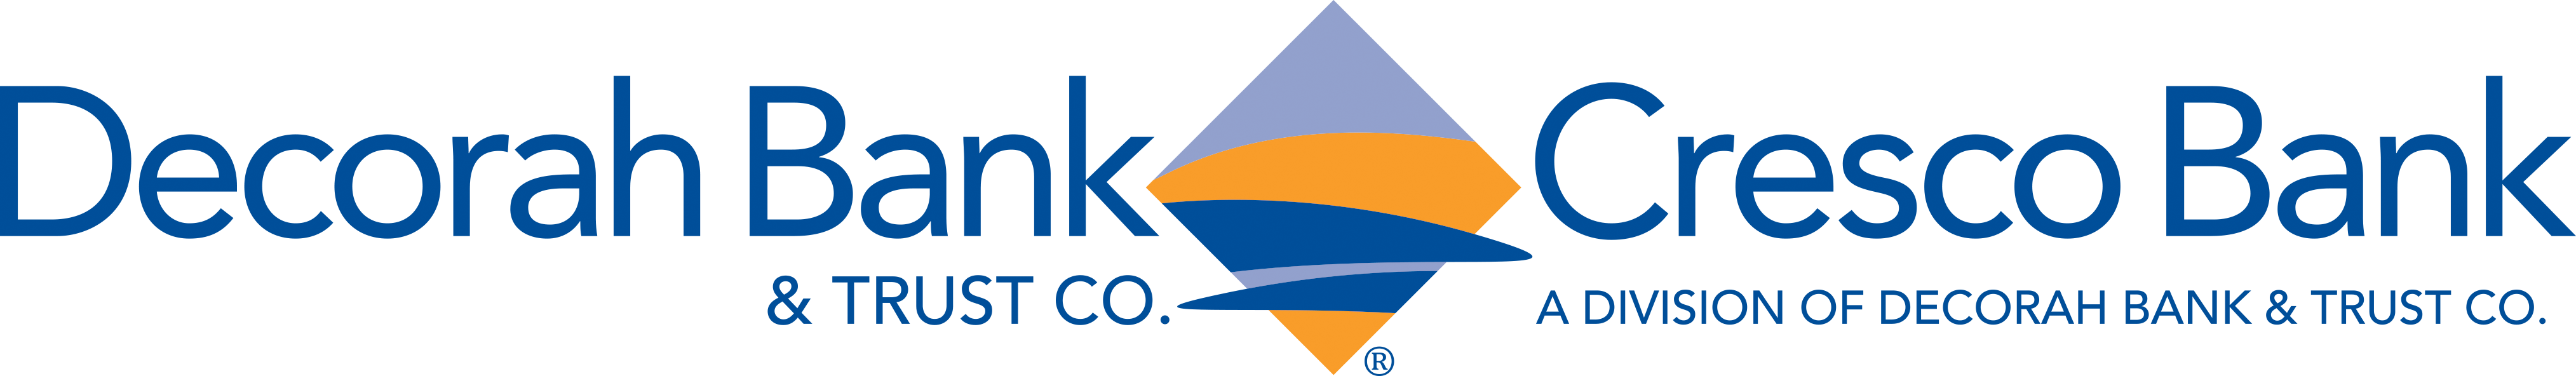 Decorah Bank & Trust Company Company Logo